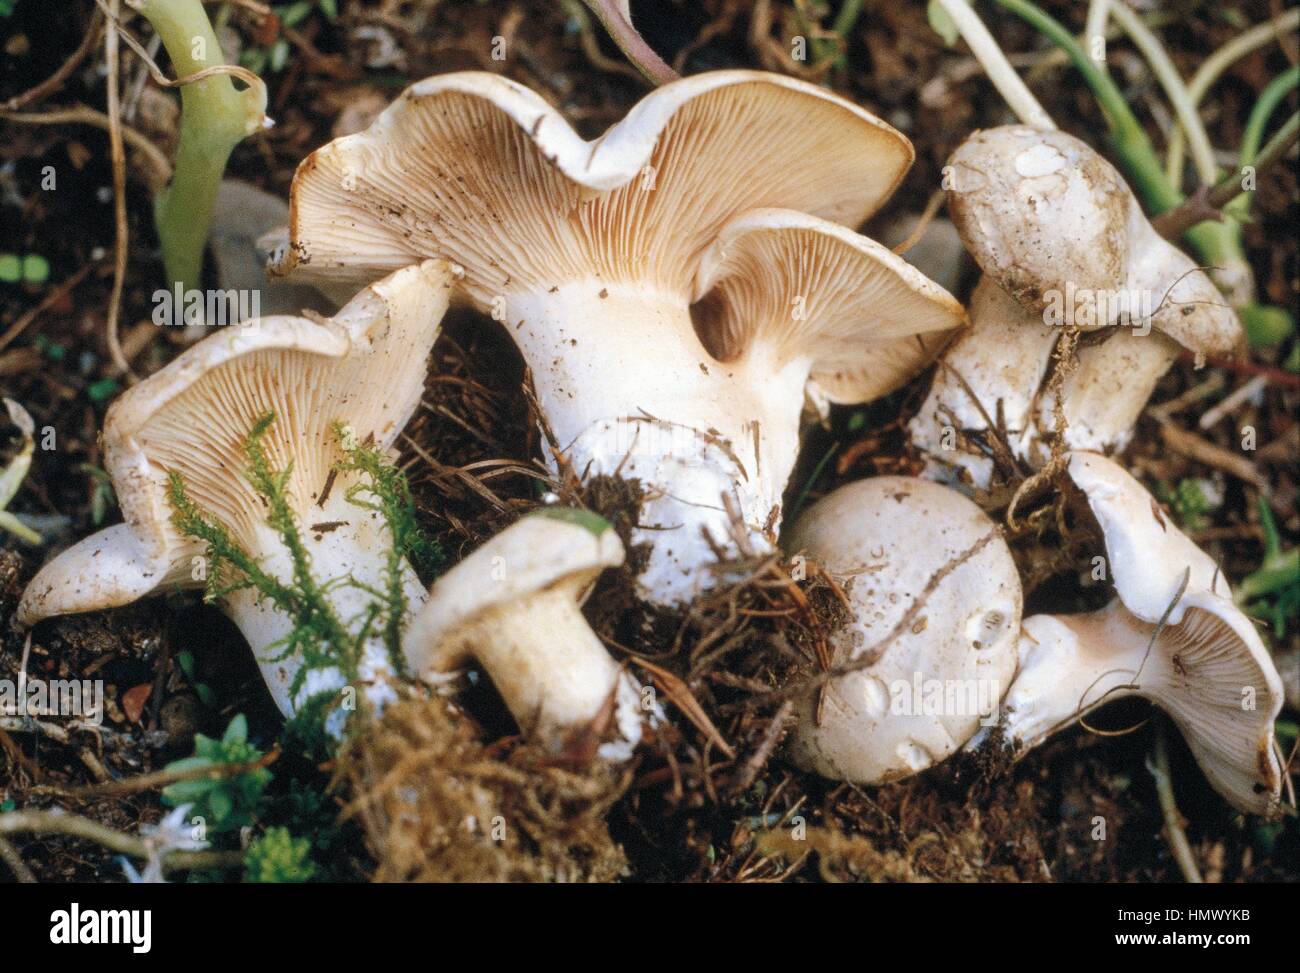 The miller or Sweetbread mushroom (Clitopilus prunulus), Entolomataceae. Stock Photo